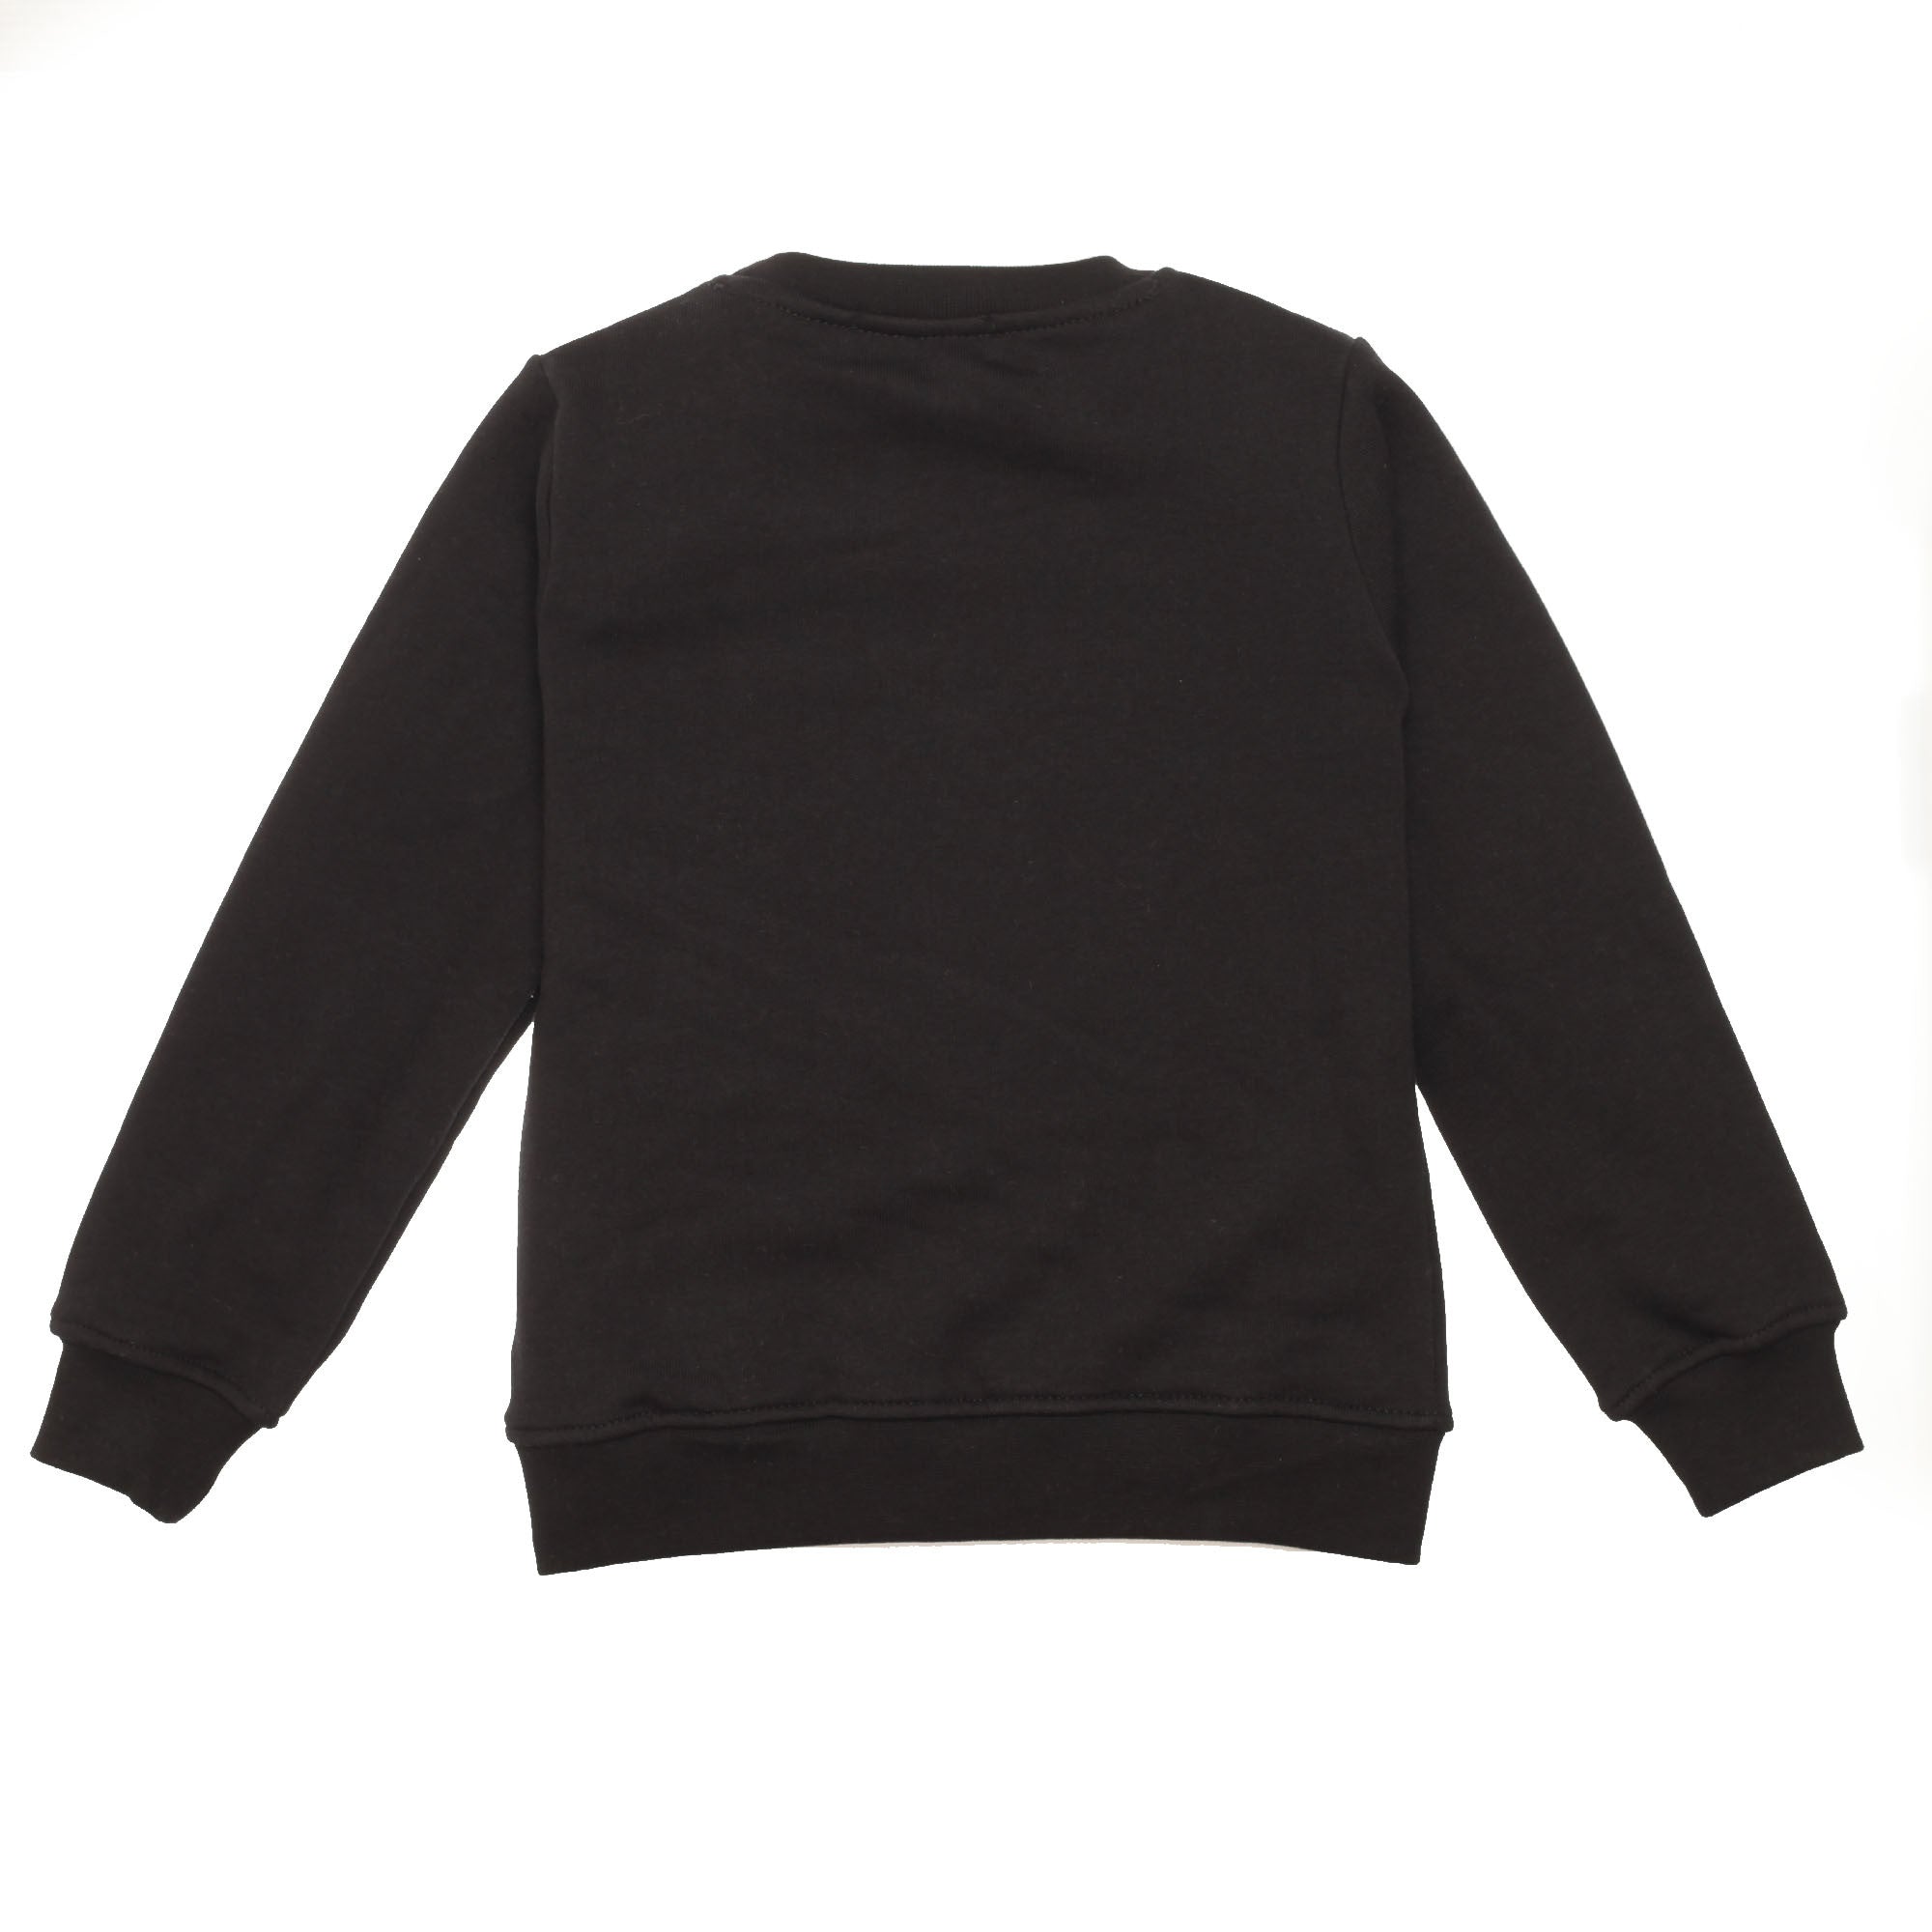 Girls Black Embroidered Trims Cotton Sweatshirt - CÉMAROSE | Children's Fashion Store - 2